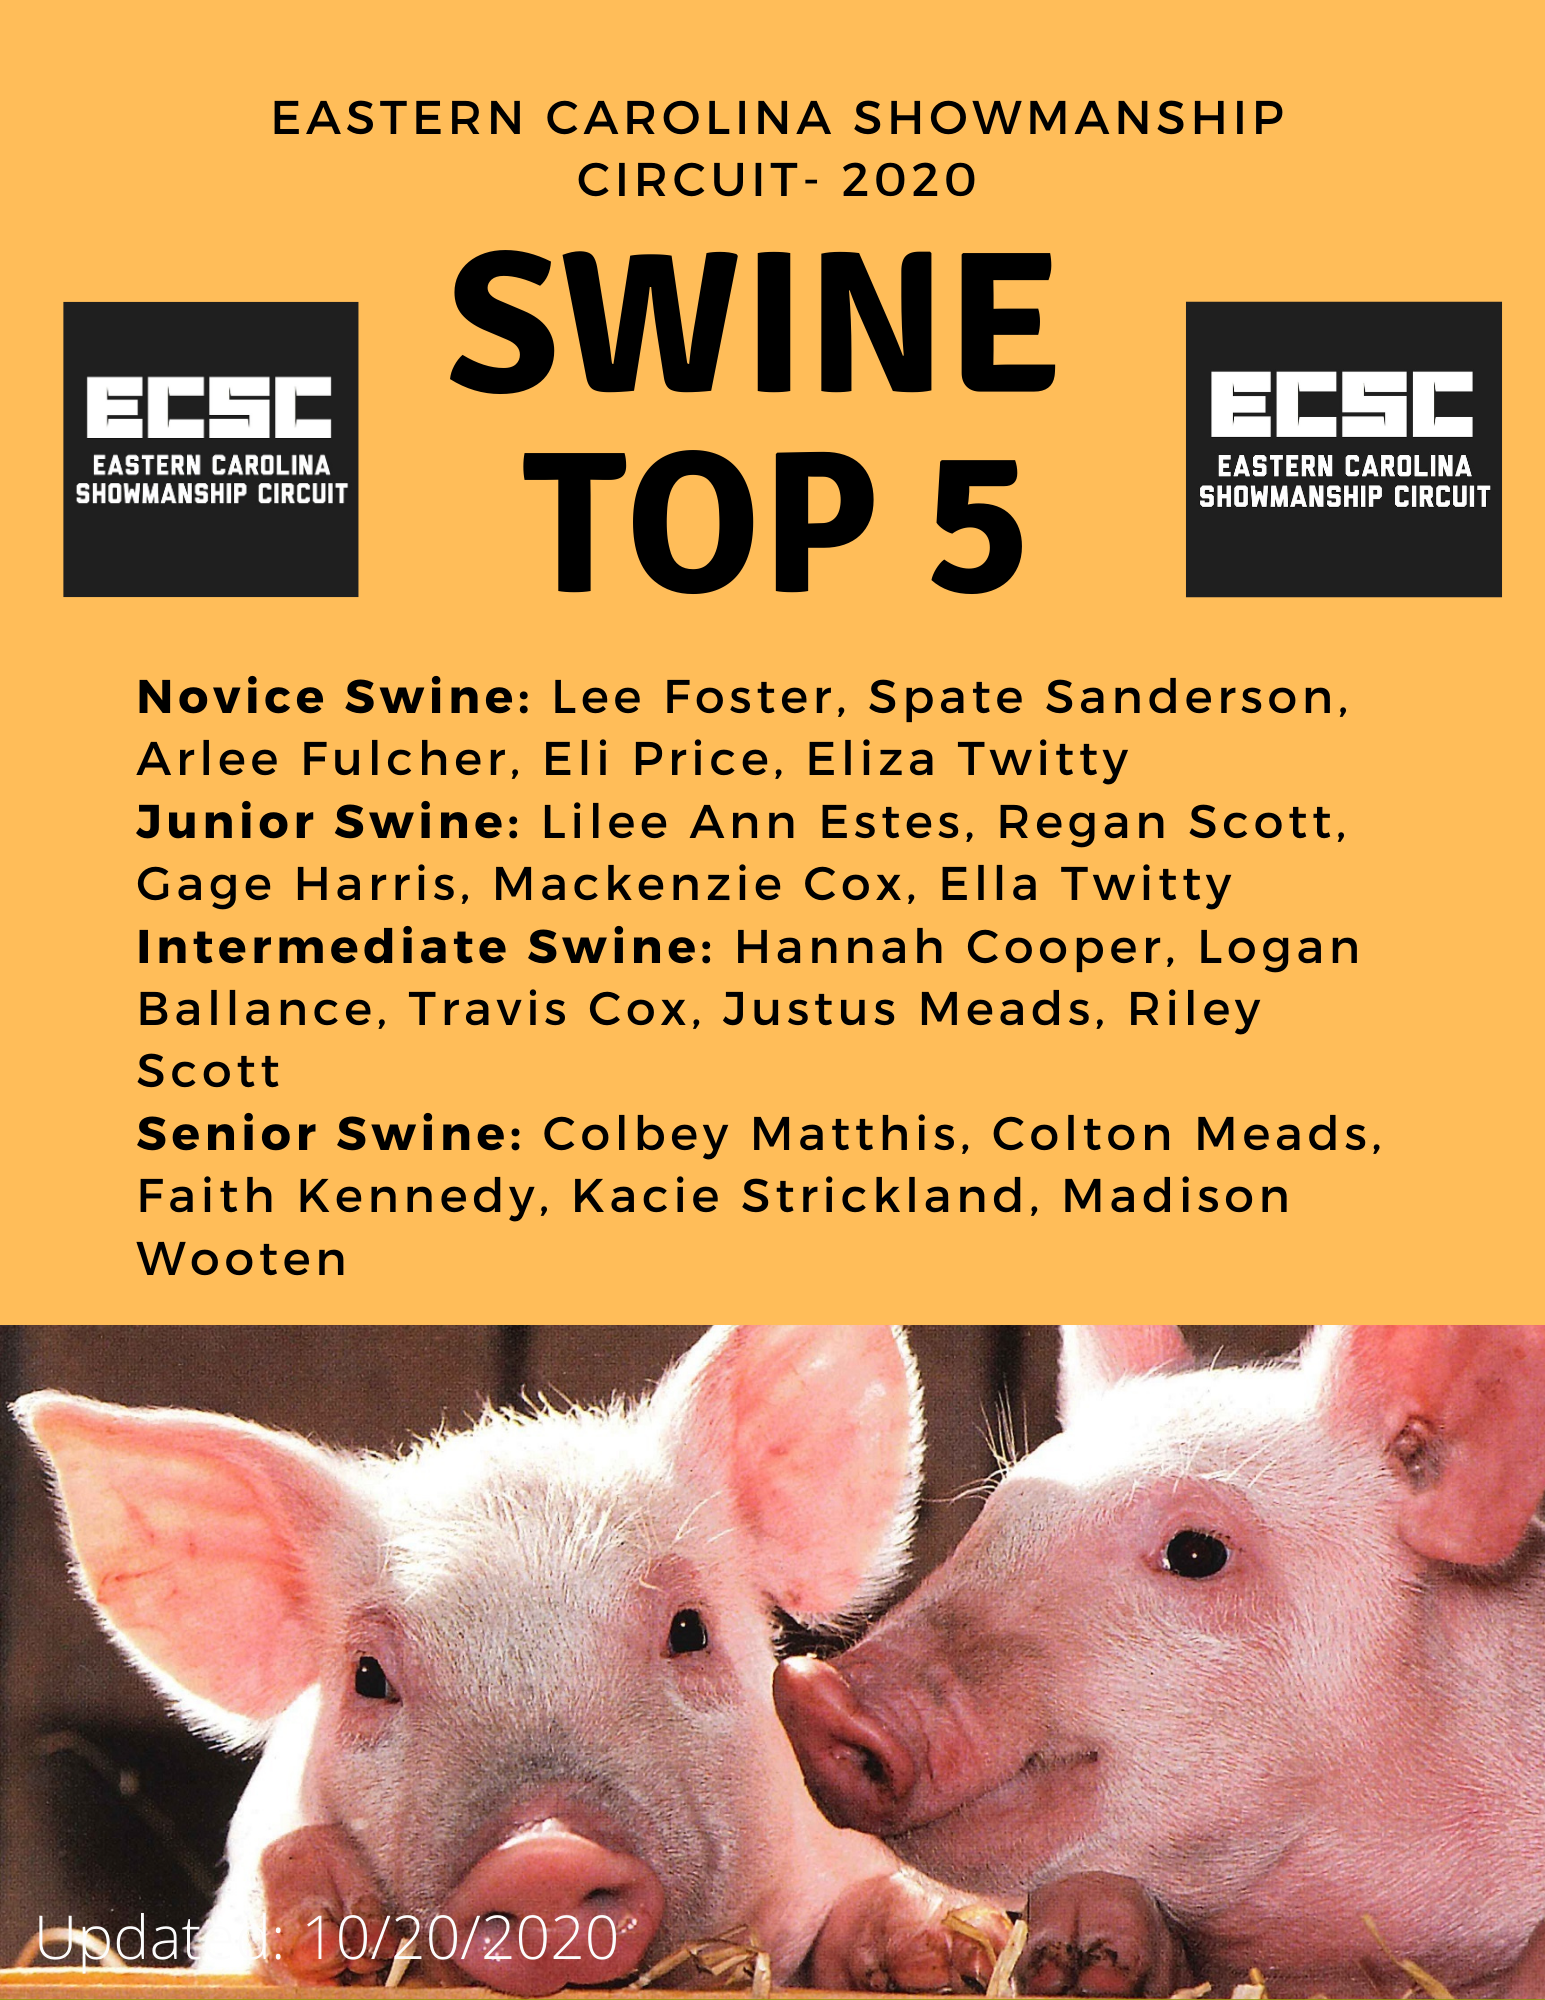 Swine top 5